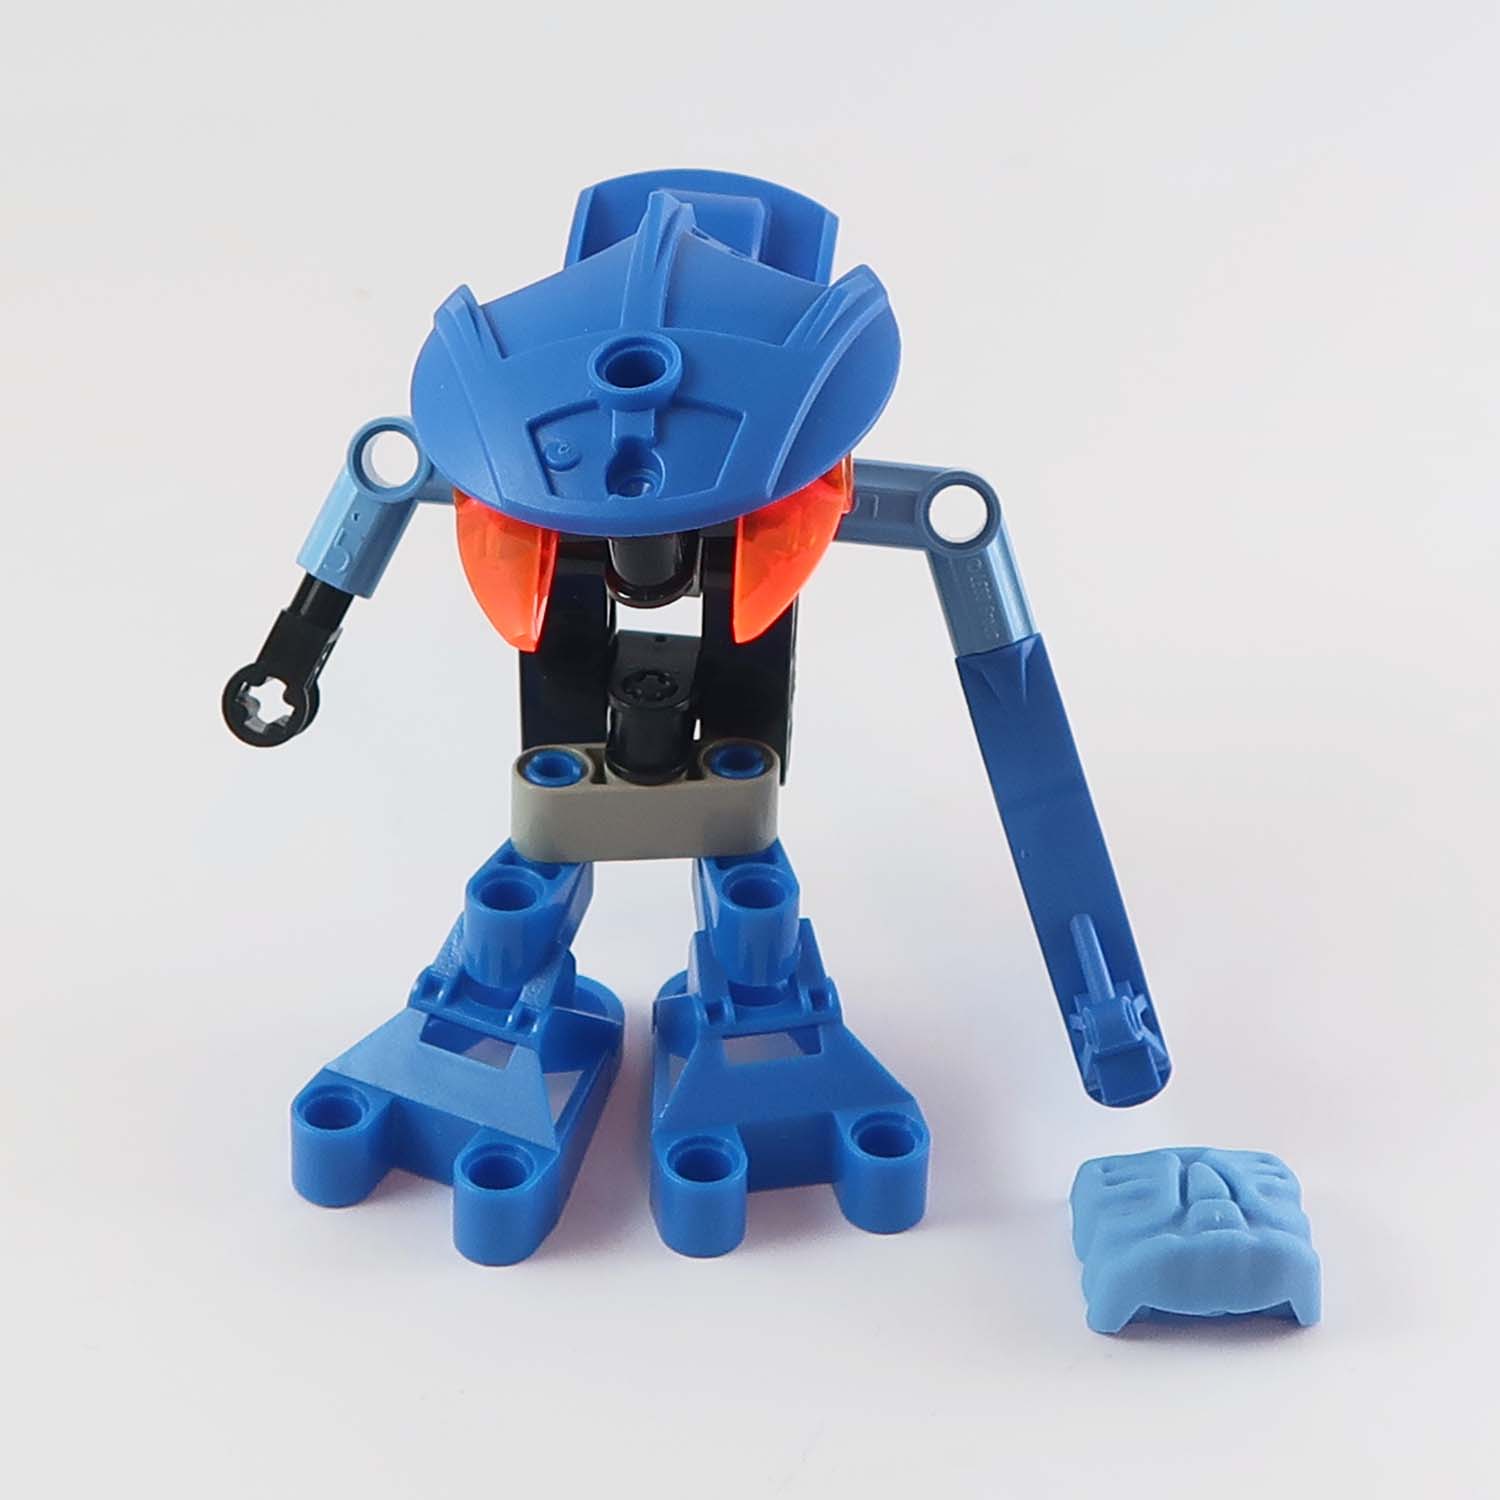 LEGO Bionicle - Gahlok Va (8550)